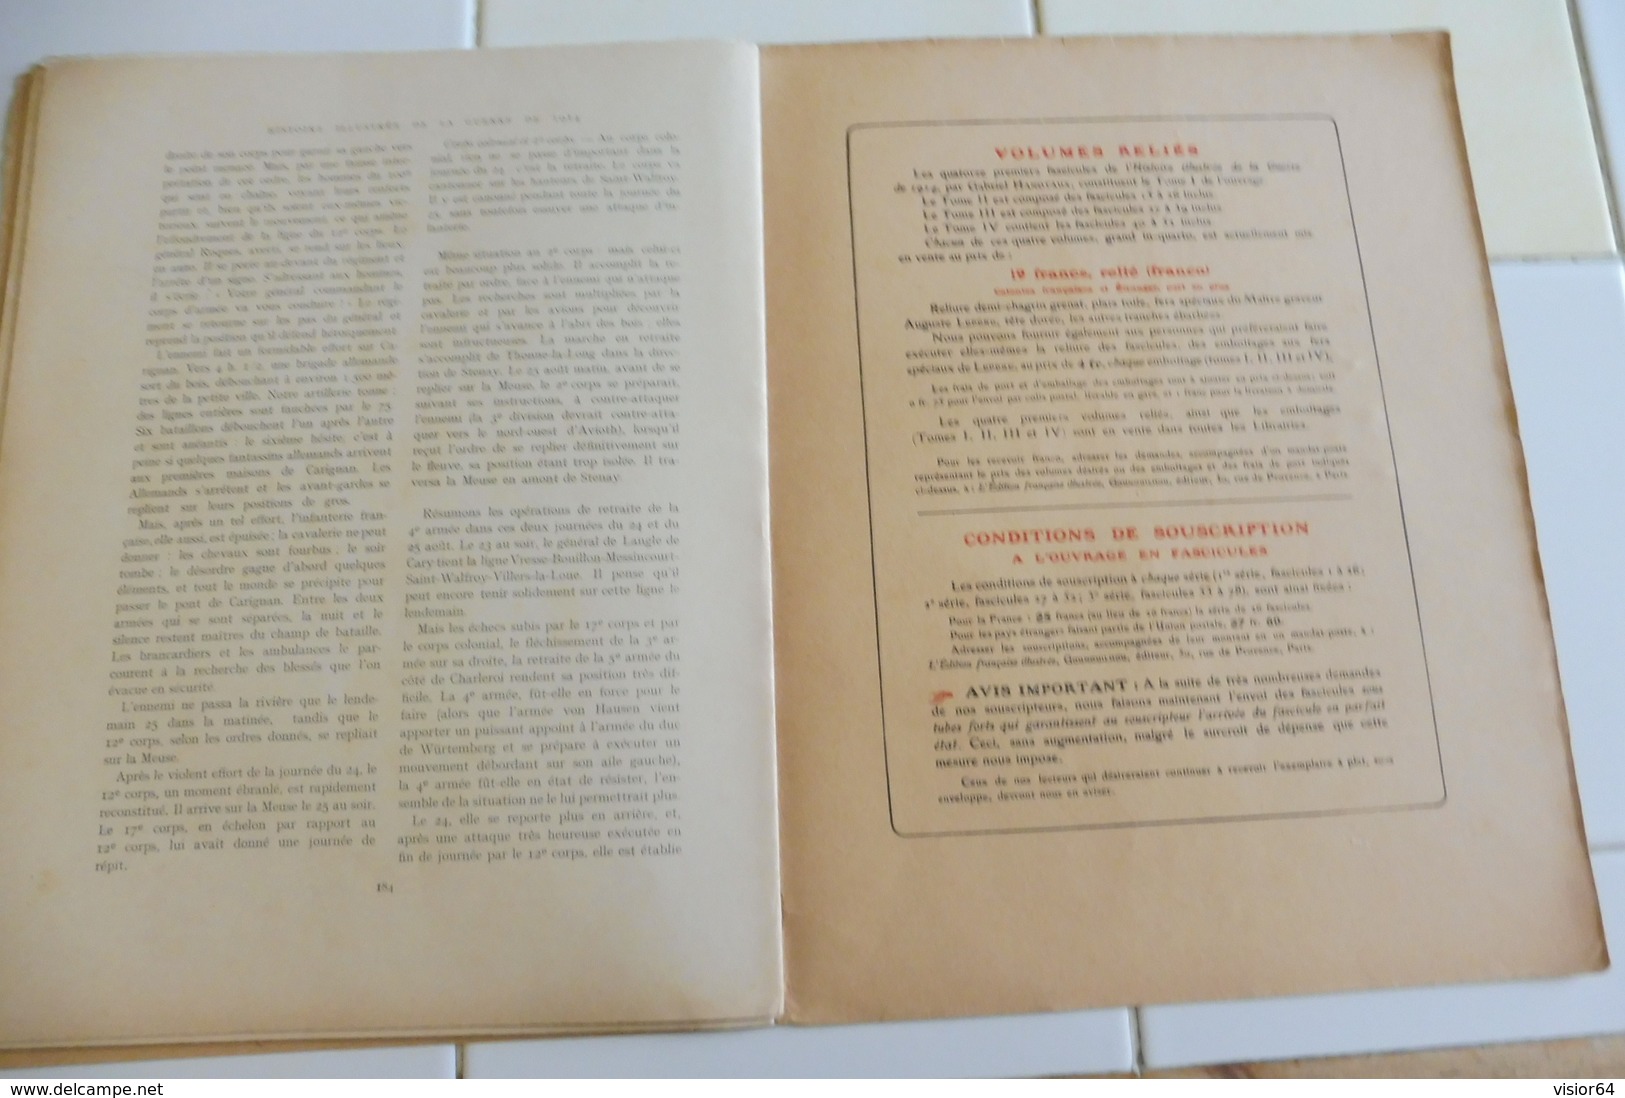 60-Histoire Illustrée guerre 1914- Montmédy Haut- Charleville Mézières Revin Fumay Monthermé Spincourt Aiglemont-Longwy